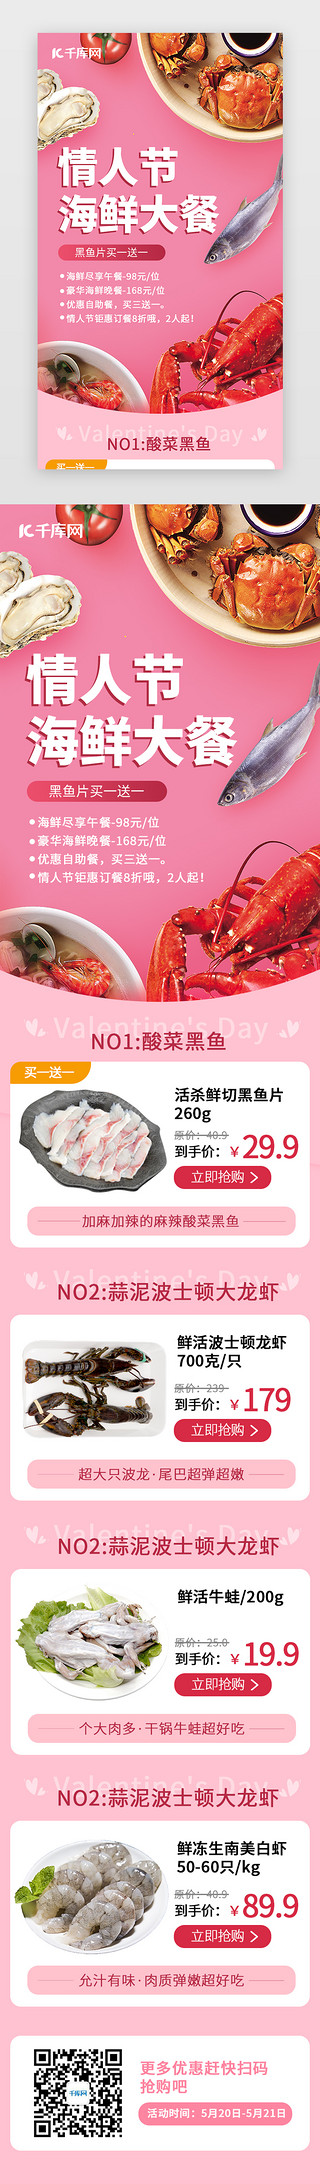 海鲜大餐UI设计素材_情人节海鲜大餐H5